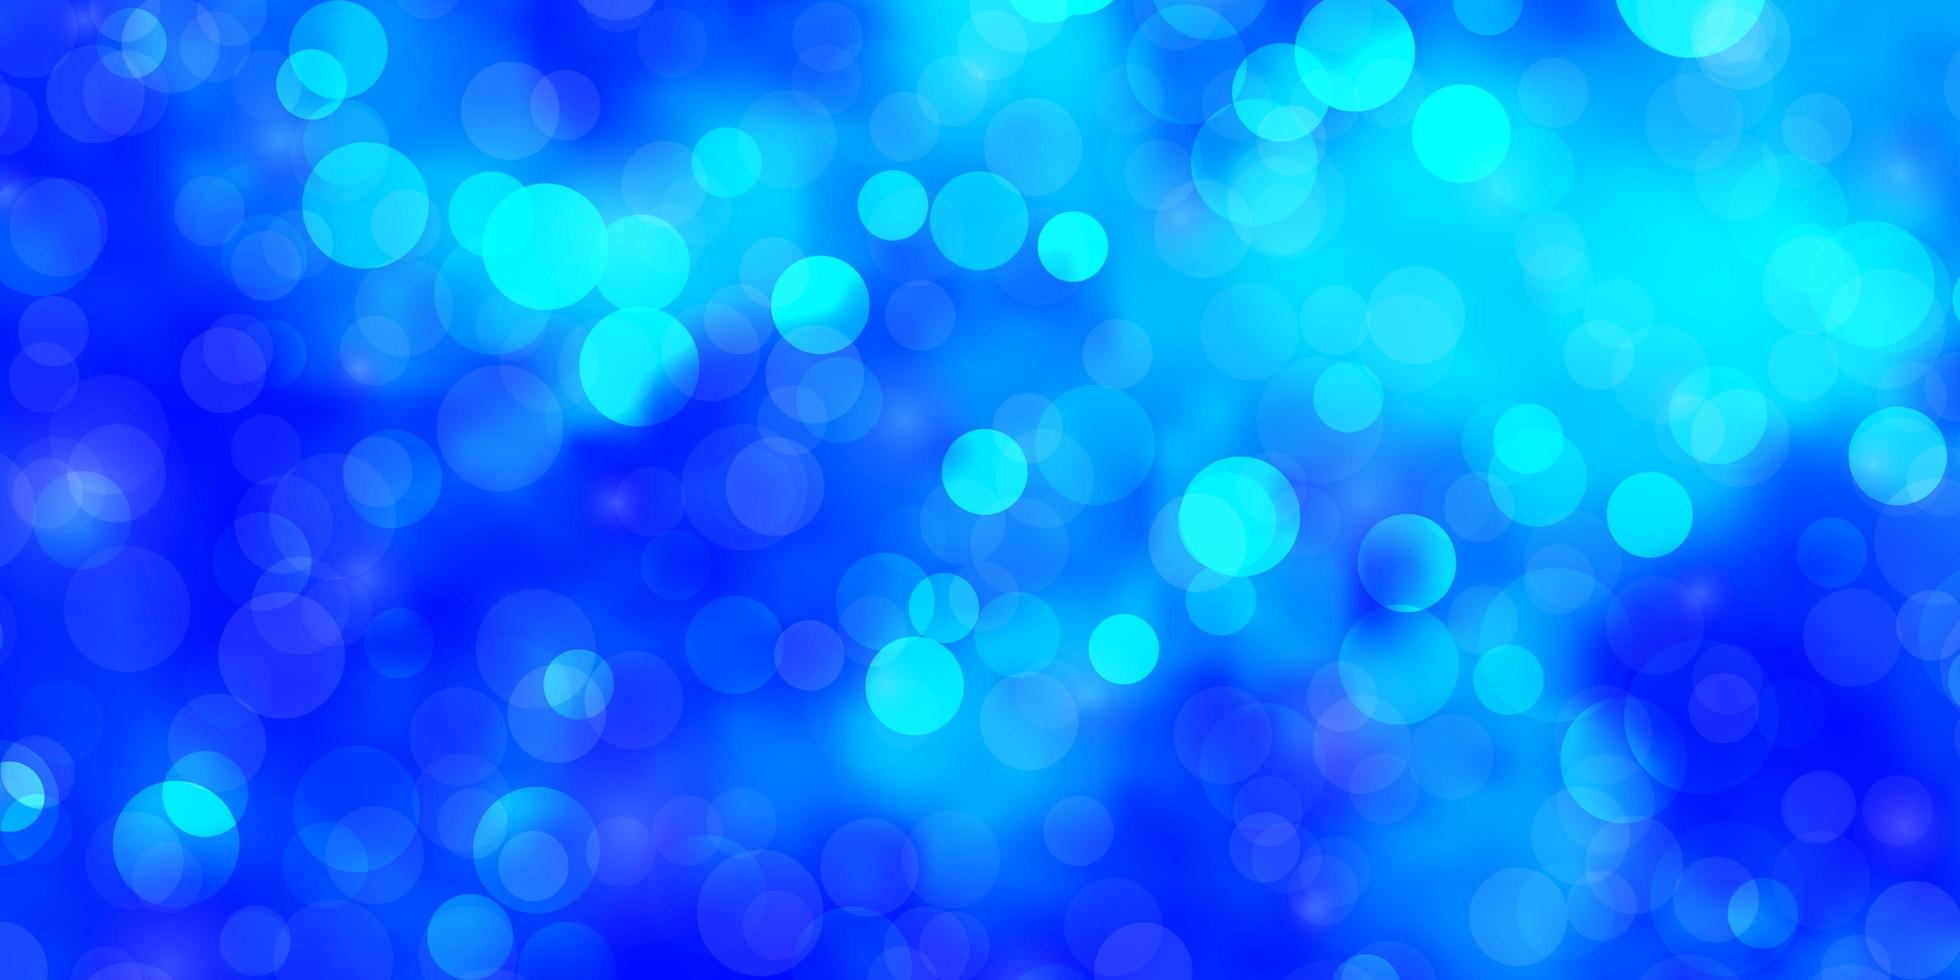 lichtblauwe vectorlay-out met cirkels abstracte illustratie met kleurrijke vlekken in het ontwerp van de aardstijl voor affichesbanners vector